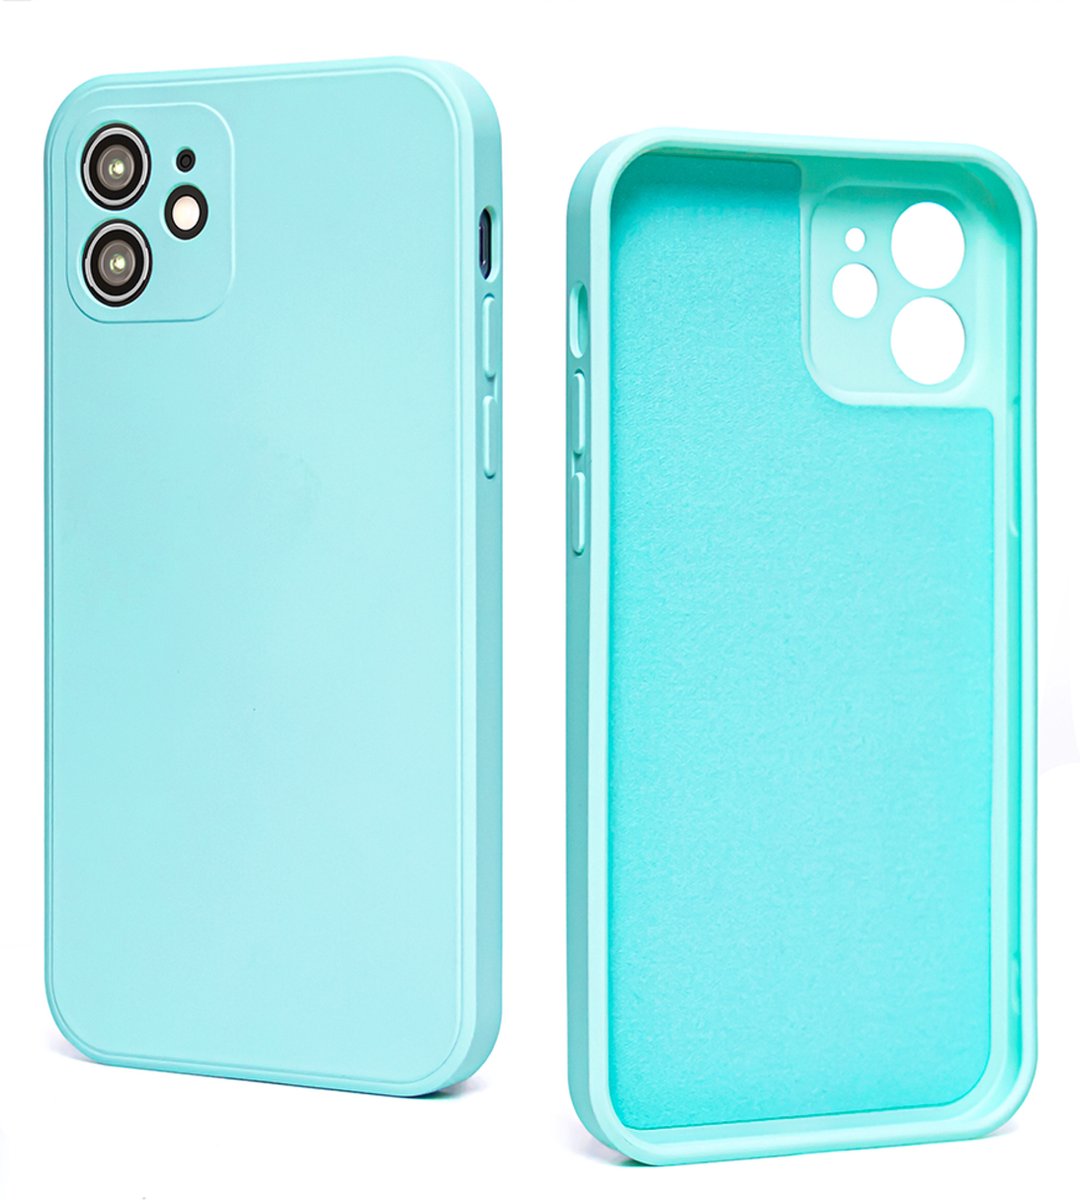 Iphone 13 case - Lichtblauw